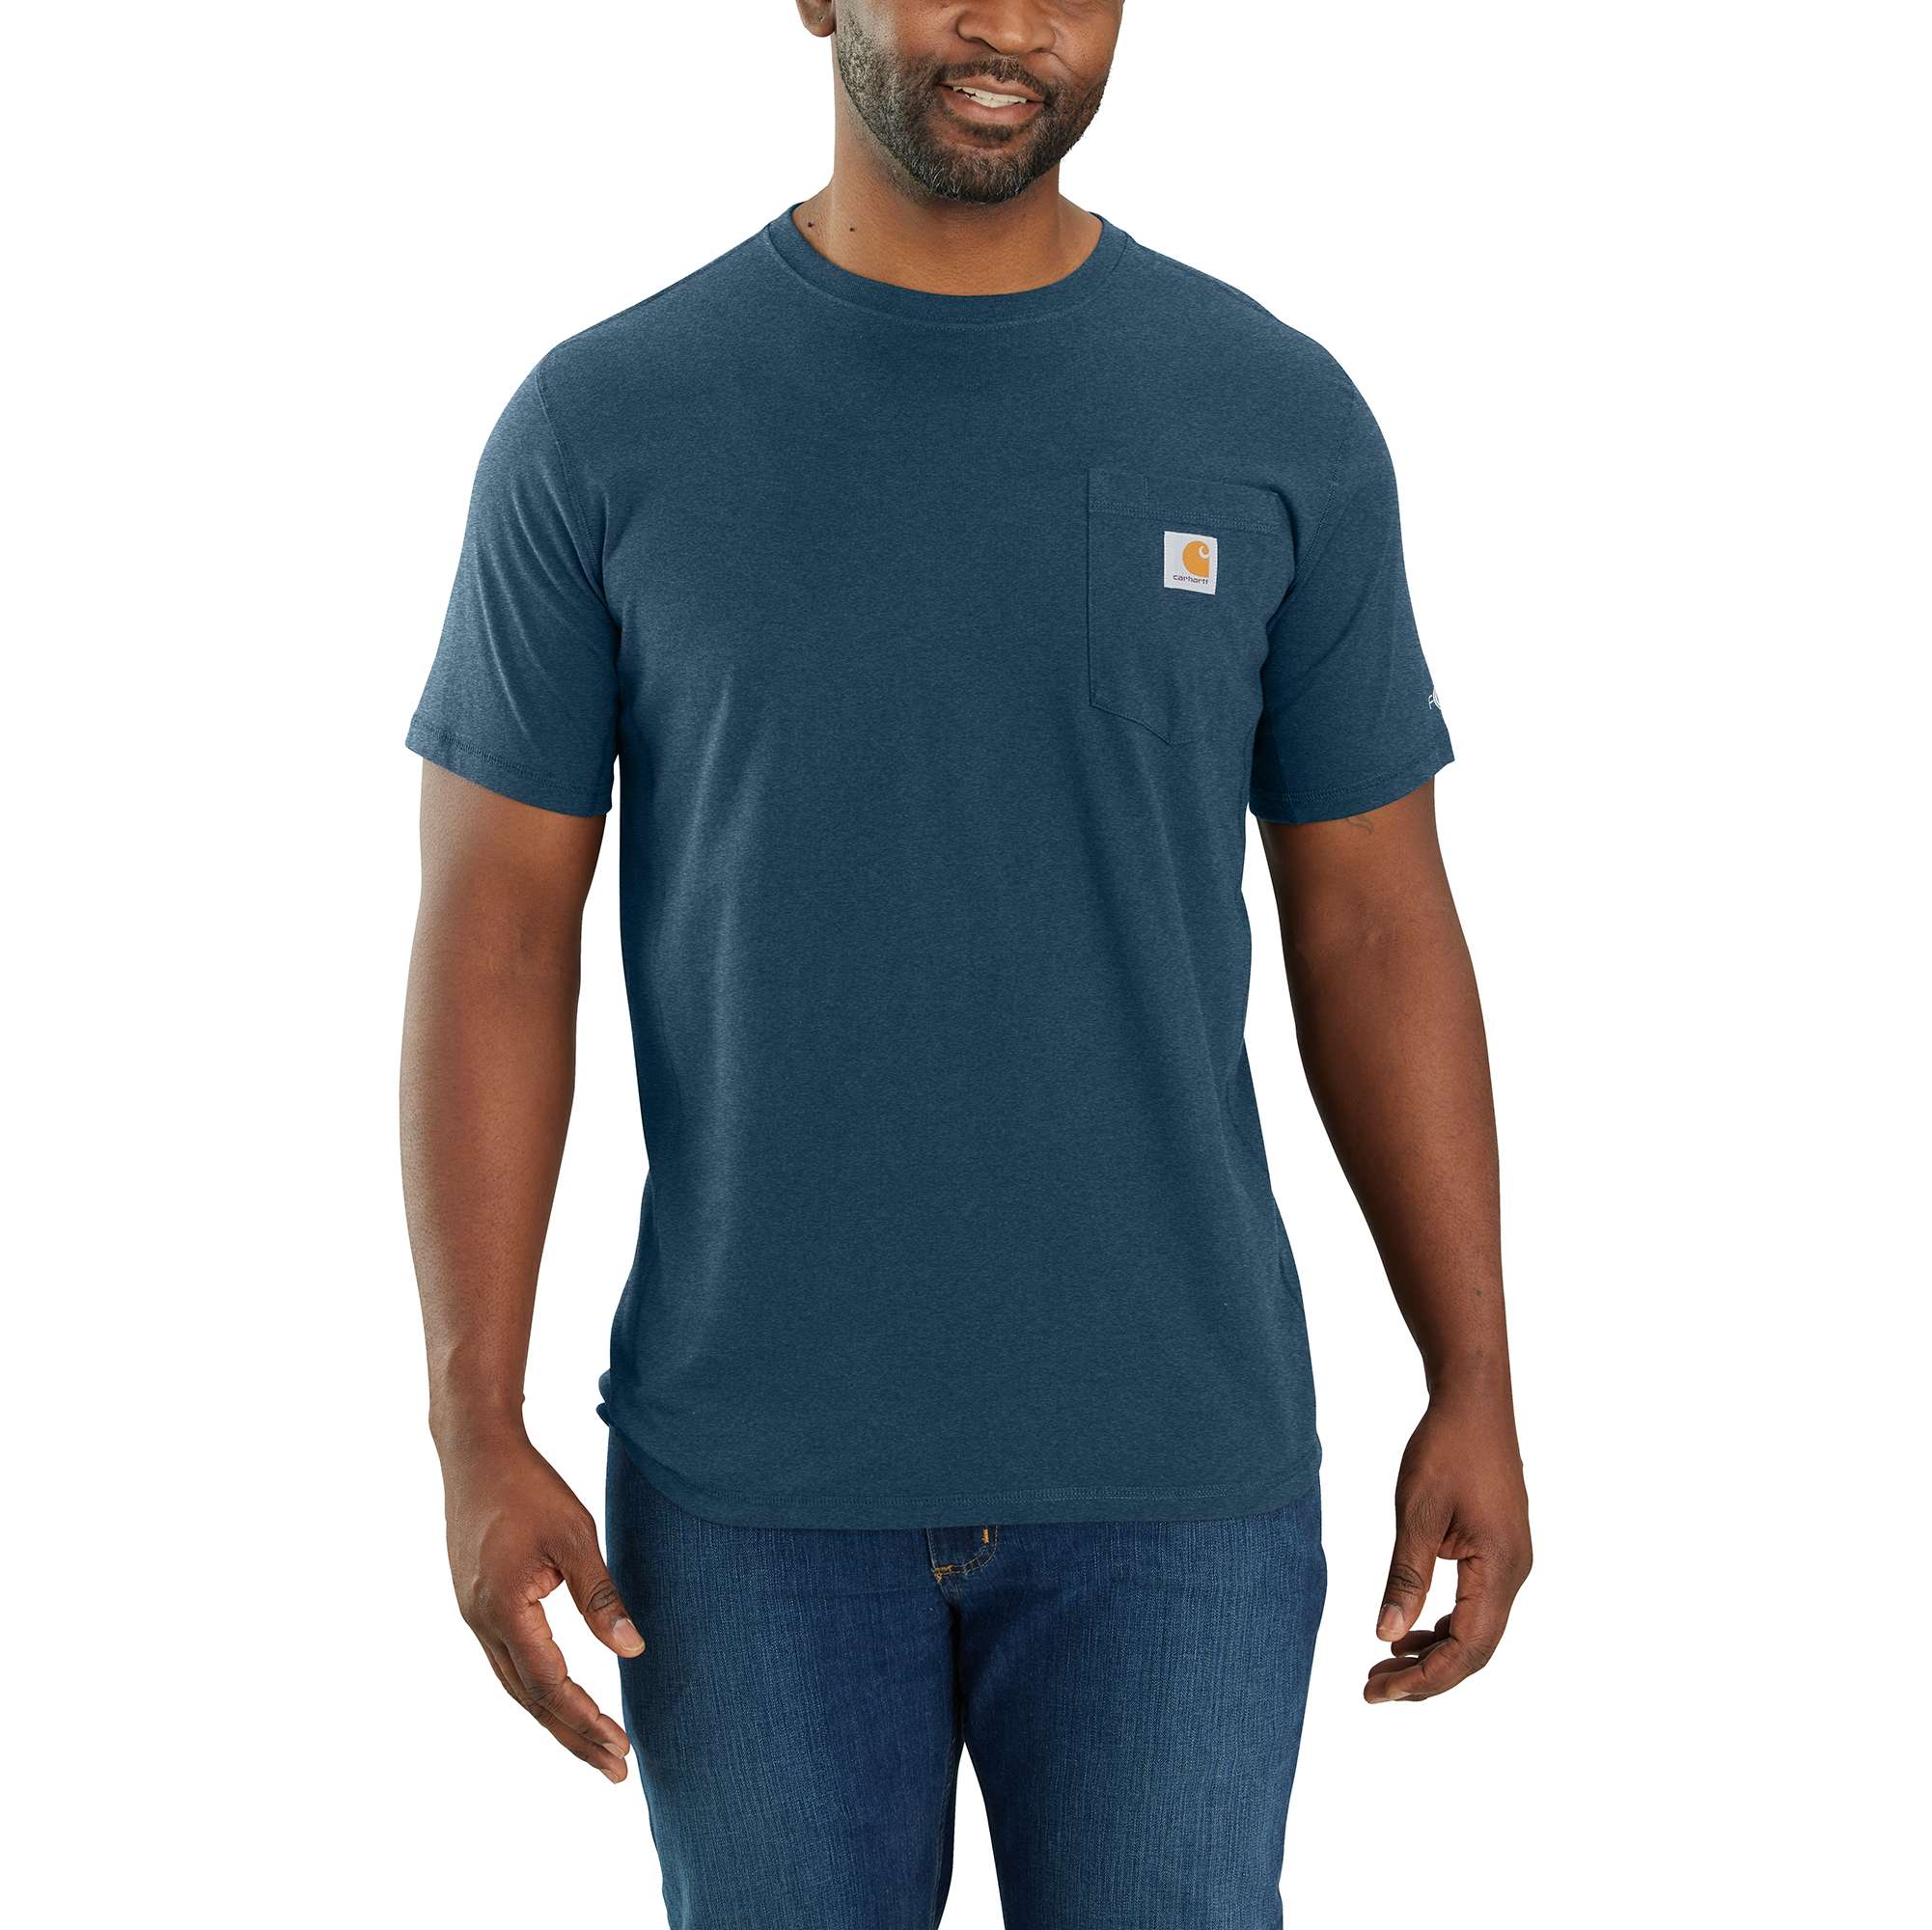 Carhartt Men's Knit Short Sleeve Solid T shirt Medium in the